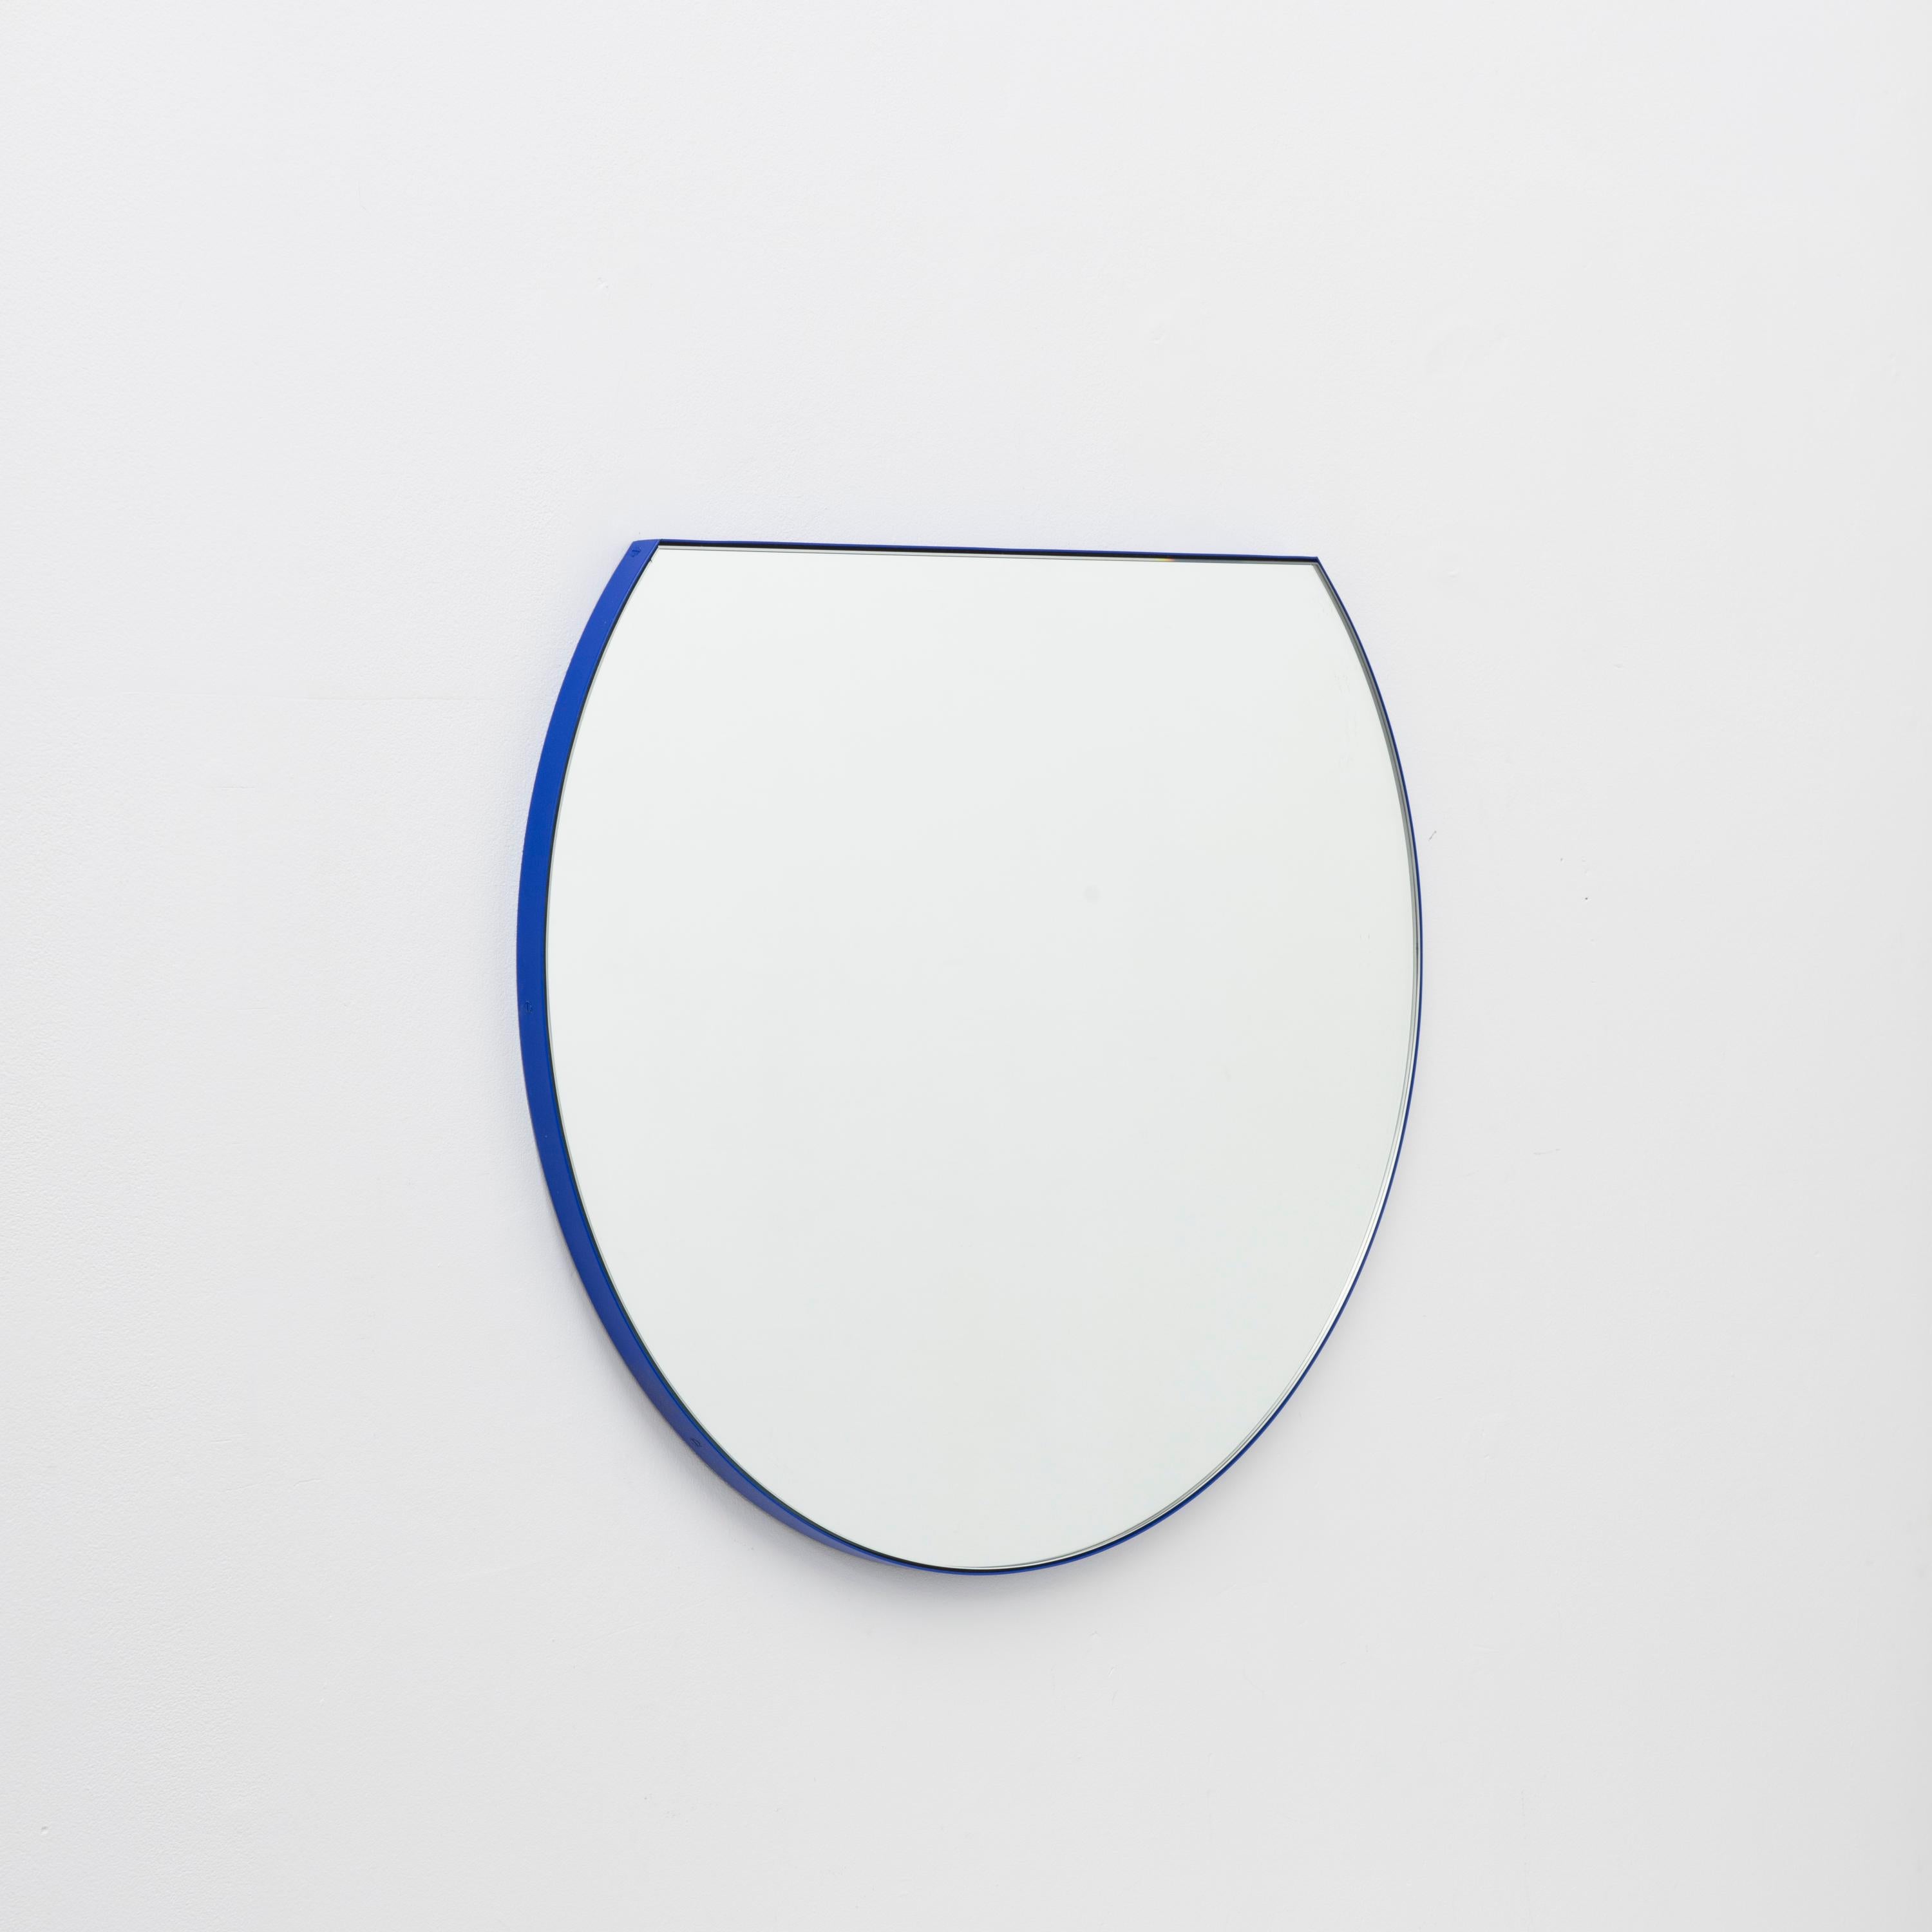 Nouveau miroir rond moderne avec un cadre bleu vibrant en aluminium peint par poudrage. Conçu et fabriqué à la main à Londres, au Royaume-Uni.

Equipé d'un crochet en laiton ou d'une barre en z en aluminium selon la taille du miroir. Également